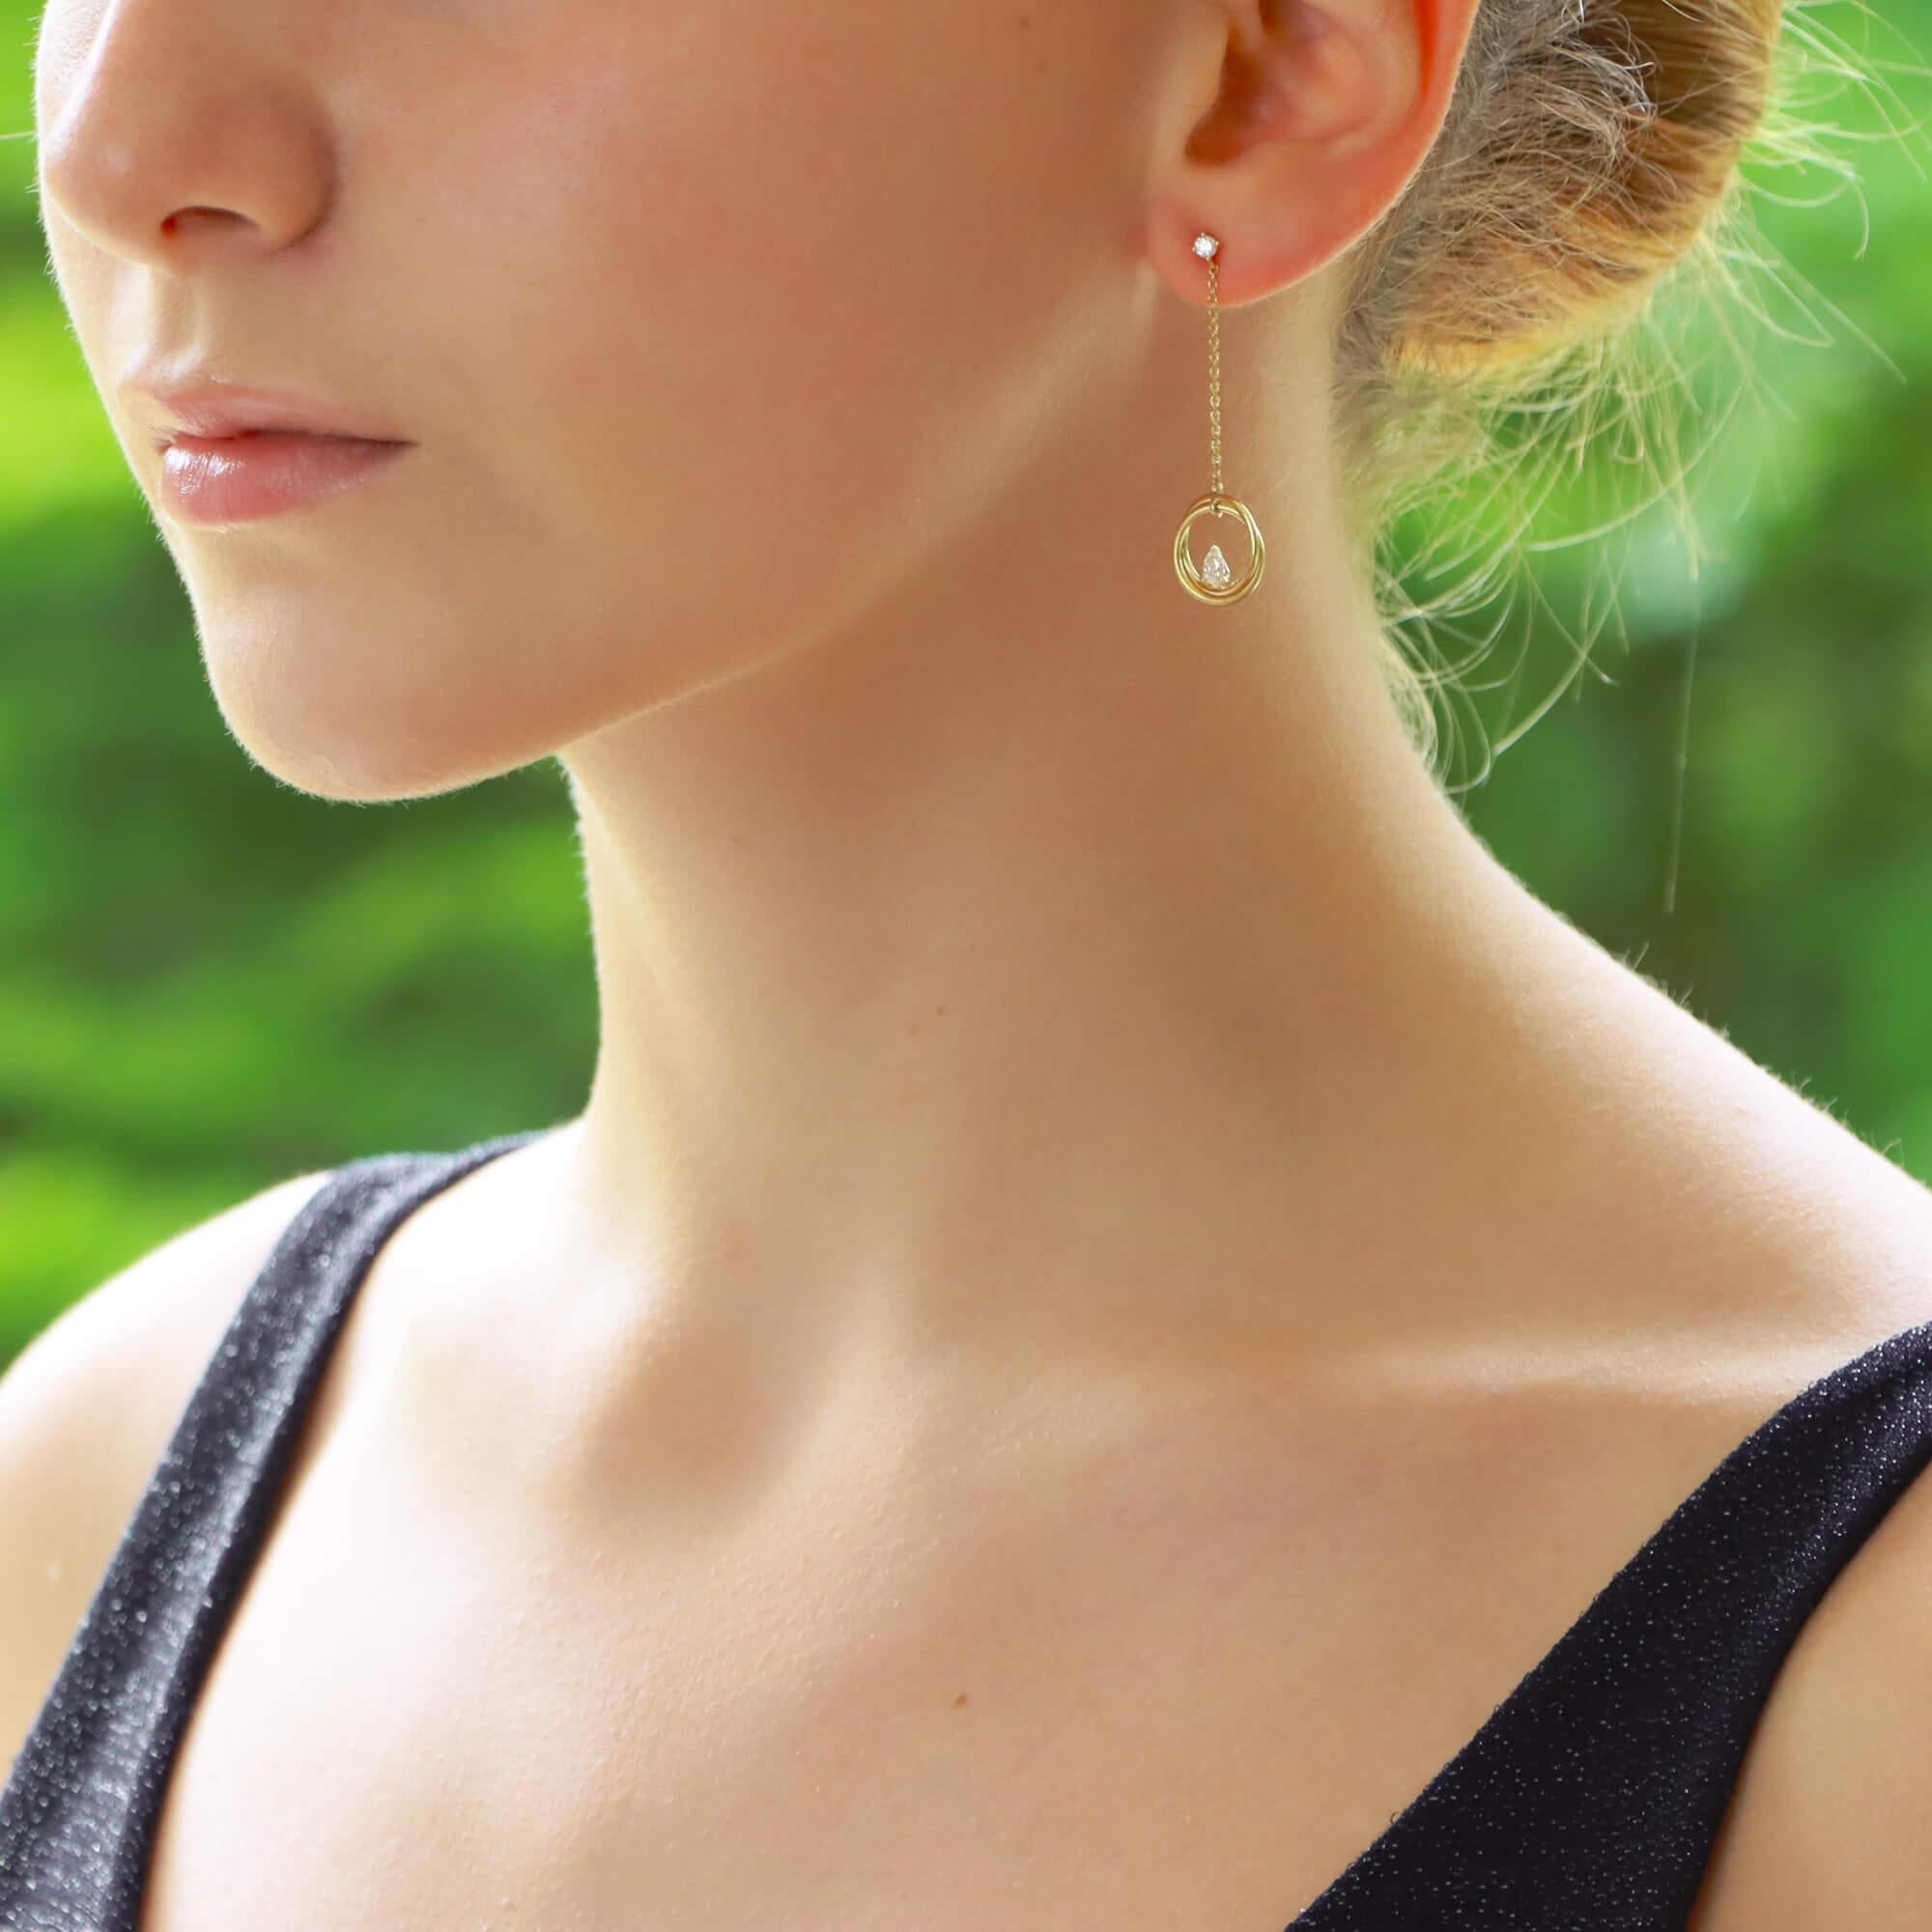 Ein schönes Paar Diamant-Ohrringe in 18 Karat Gelbgold. 

Jeder Ohrring besteht zunächst aus einem einzelnen runden Diamanten mit Brillantschliff, der mit vier Krallen sicher gefasst ist. An diesem Ohrstecker hängt eine feine Kette, an der zwei